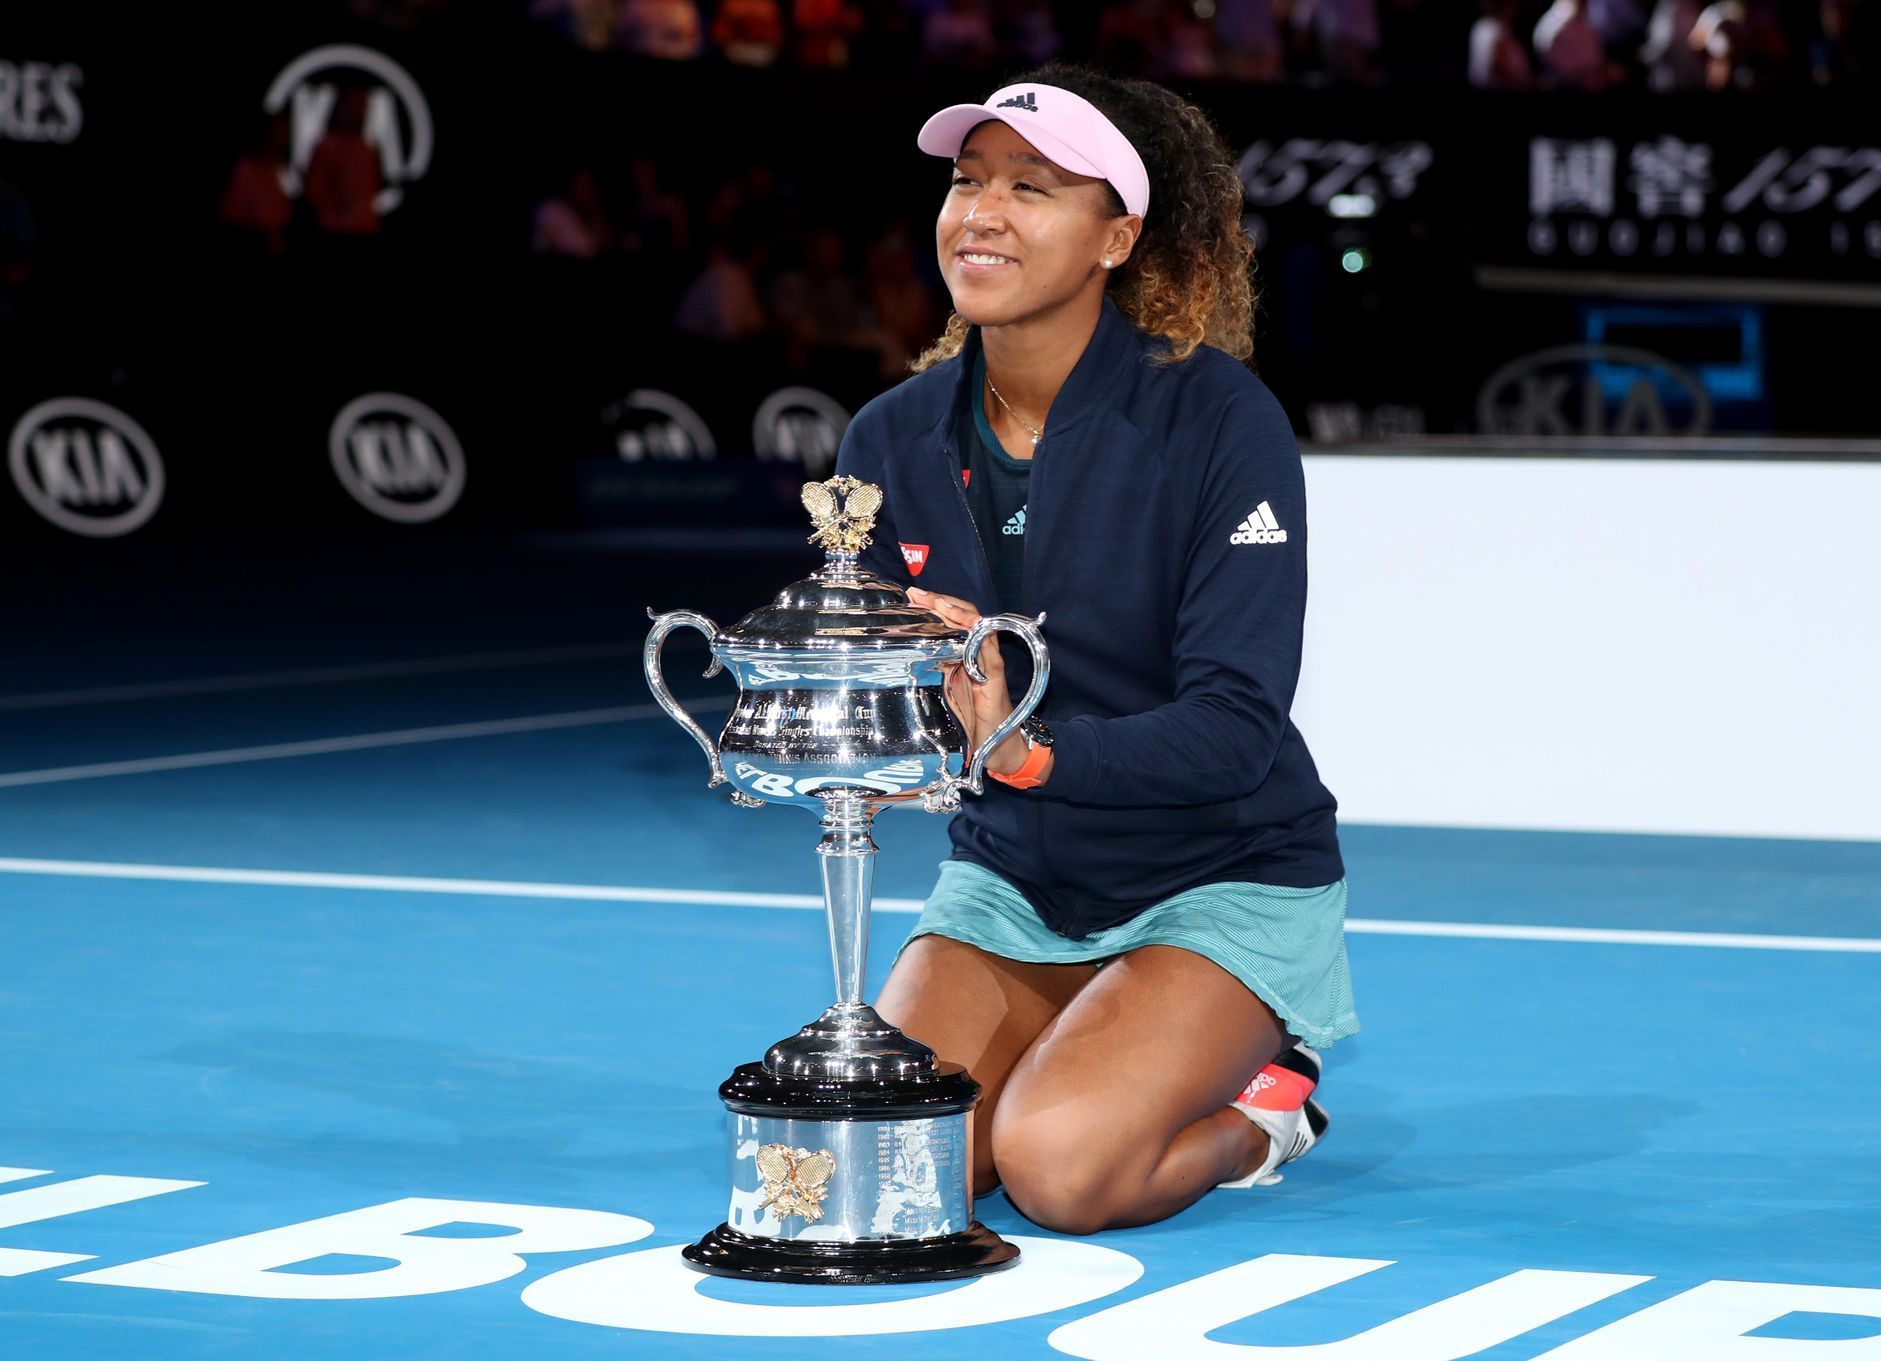 Naomi Ósakaová, Australian Open 2019